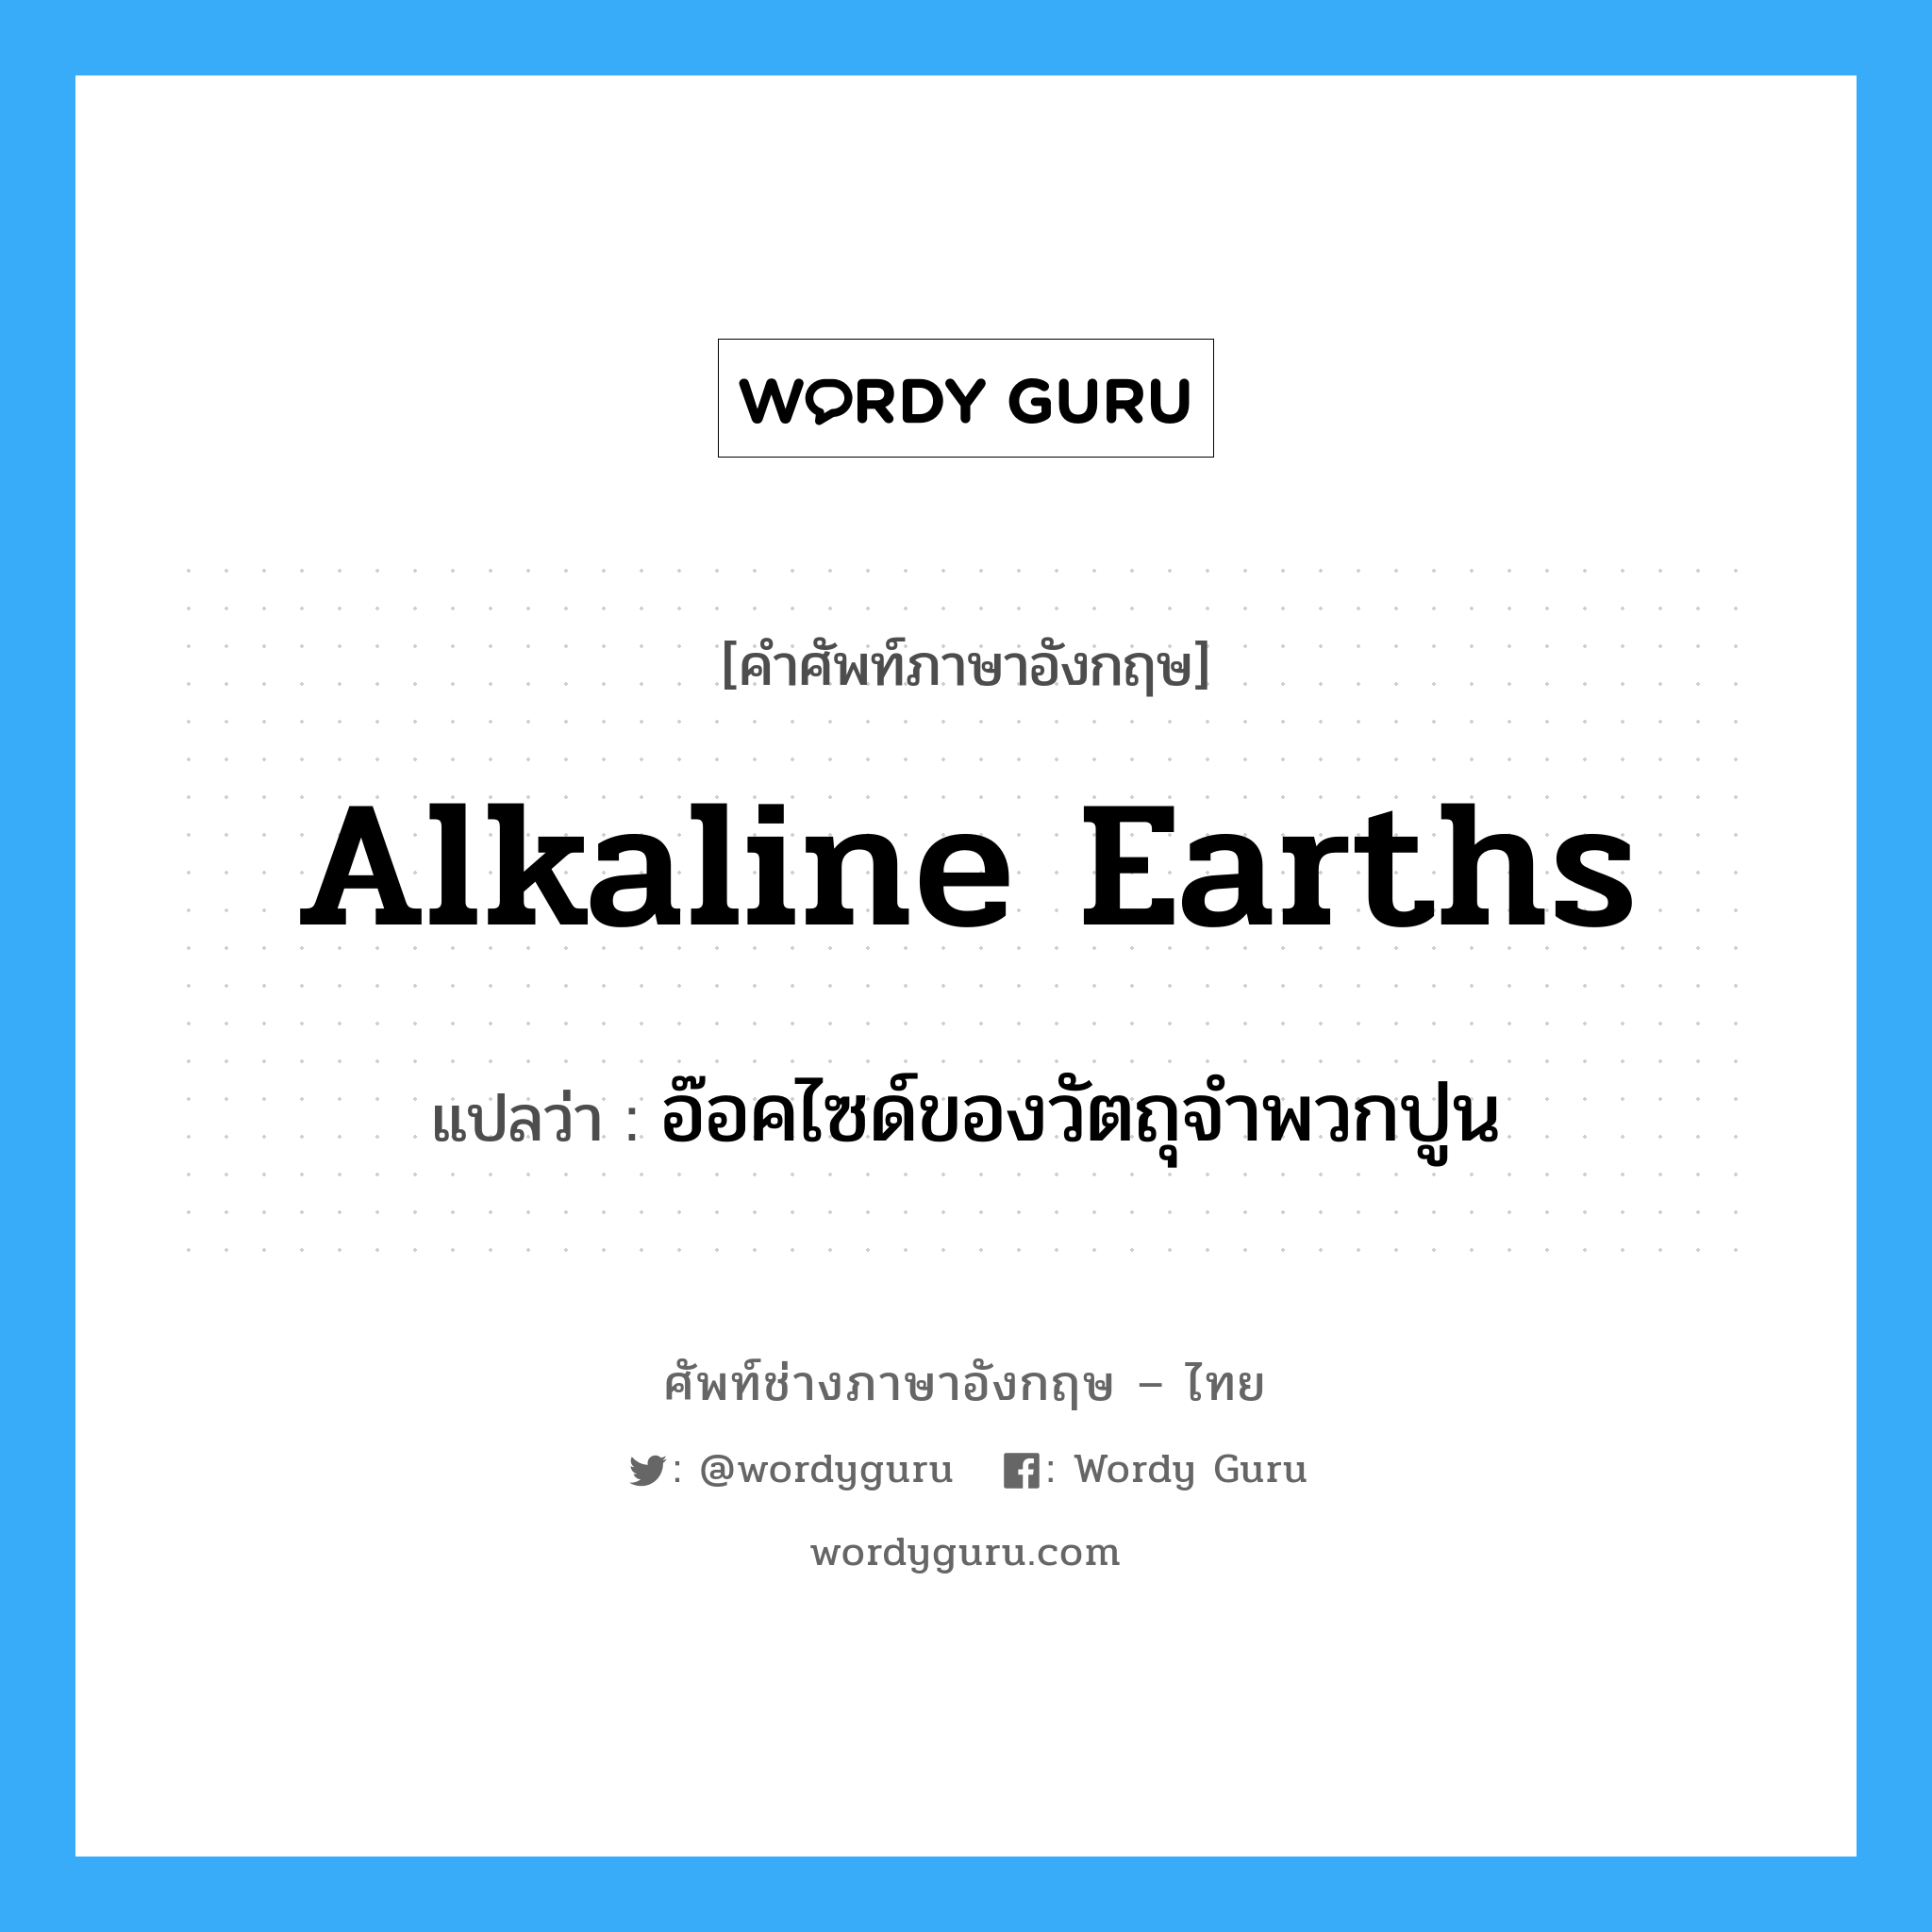 alkaline earths แปลว่า?, คำศัพท์ช่างภาษาอังกฤษ - ไทย alkaline earths คำศัพท์ภาษาอังกฤษ alkaline earths แปลว่า อ๊อคไซด์ของวัตถุจำพวกปูน